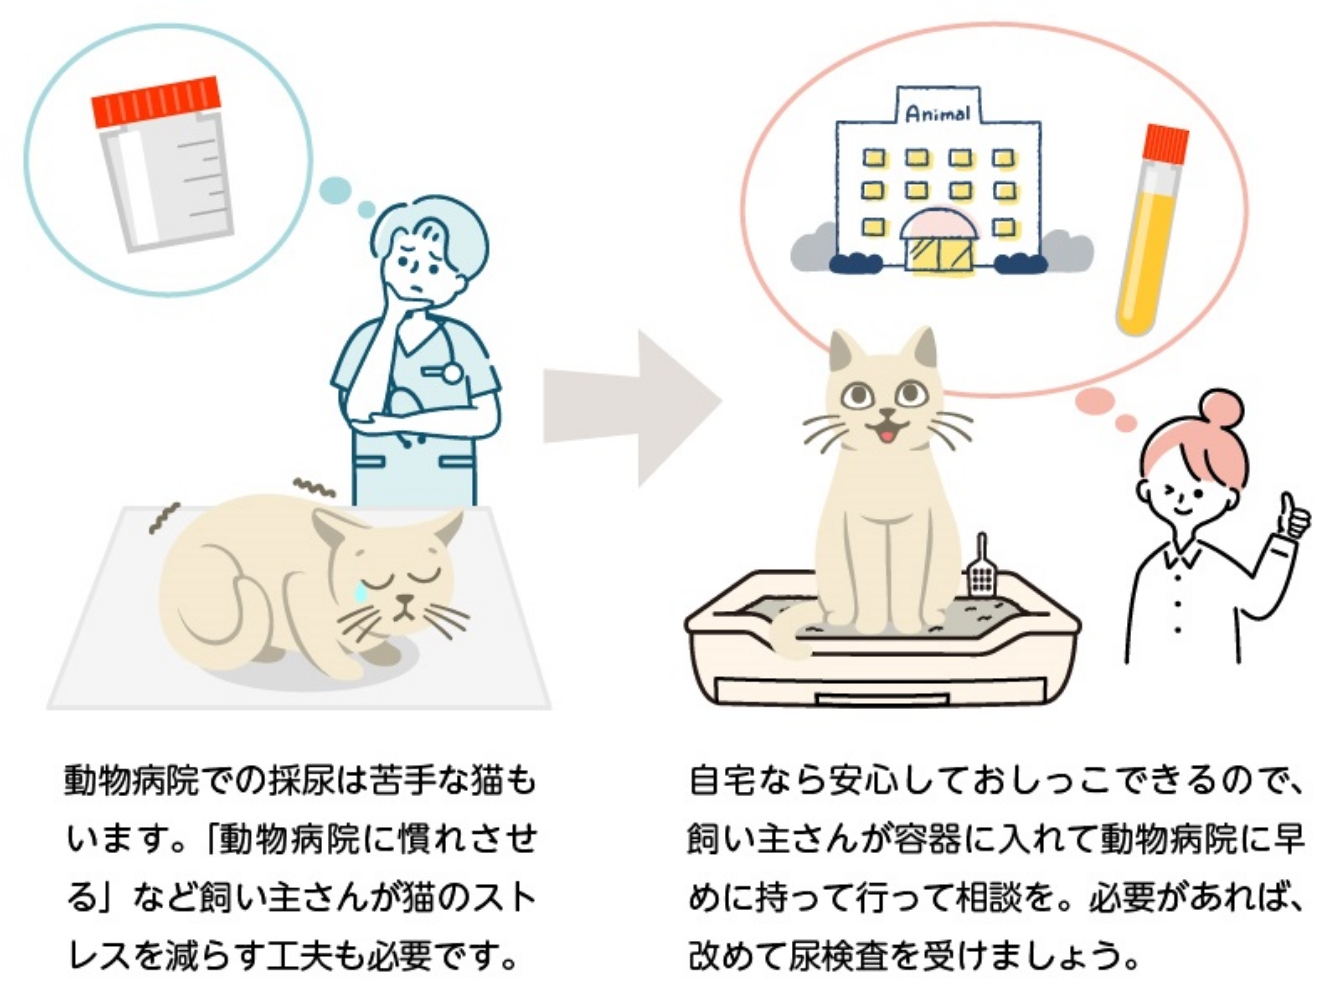 動物病院での採尿は、猫にとってはストレスになることもあり、検査項目の数値に影響が出る可能性もあります。自宅なら安心しておしっこできるので、飼い主さんが容器に入れて動物病院に持っていくことで、より普段の状態に近い数値を検査できます。